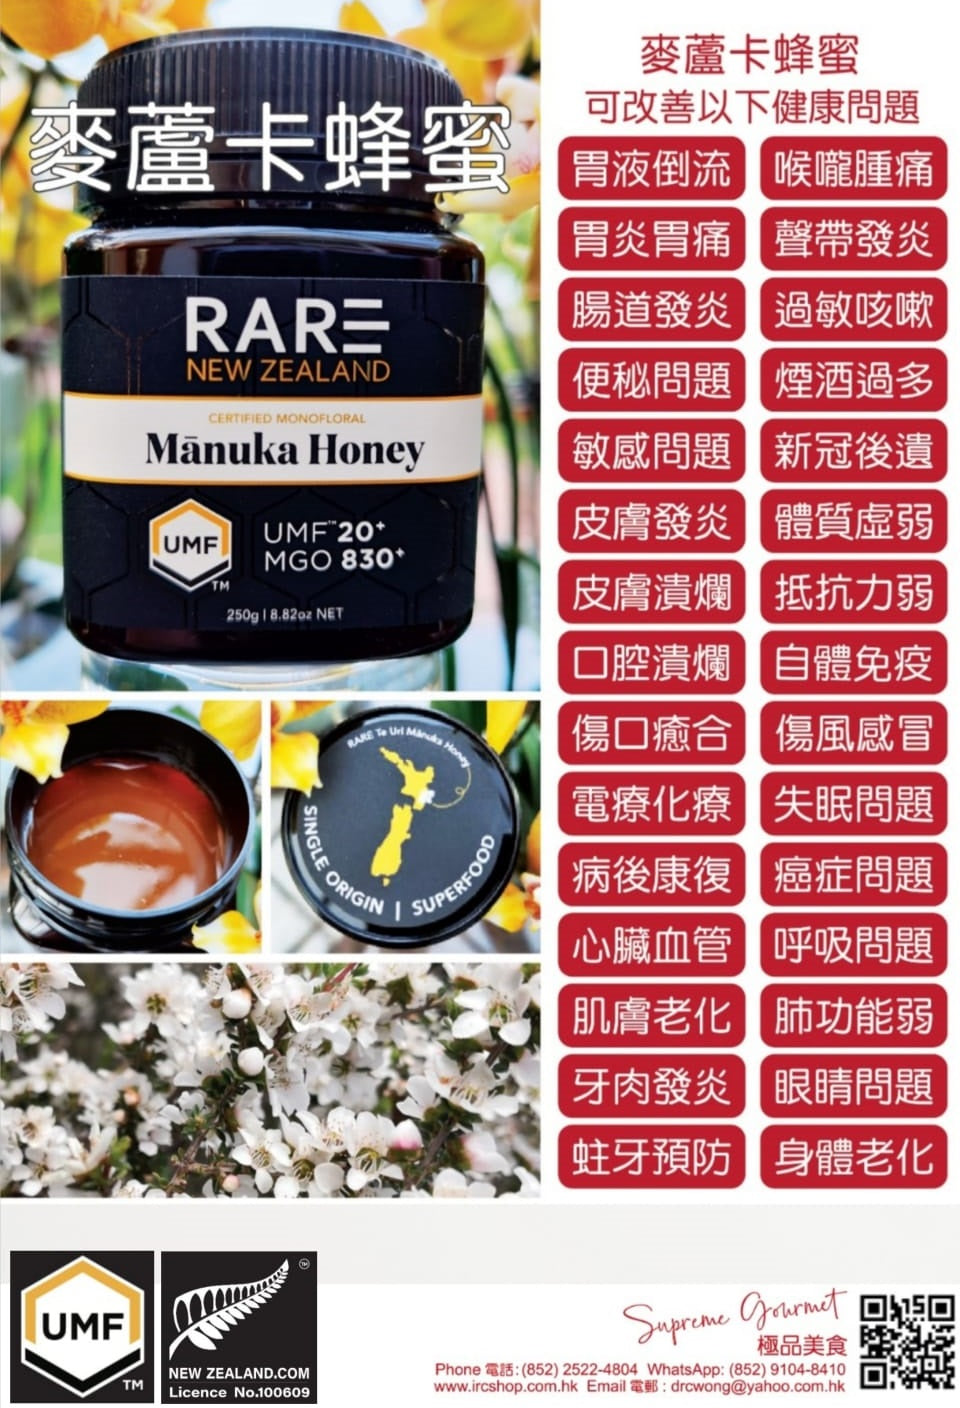 未加工麥盧卡蜂蜜,認可UMF 20+(MGO 830+),8.8 盎司（250 克） (Manuka Honey (UMF 20+/MGO 830+) 250g)